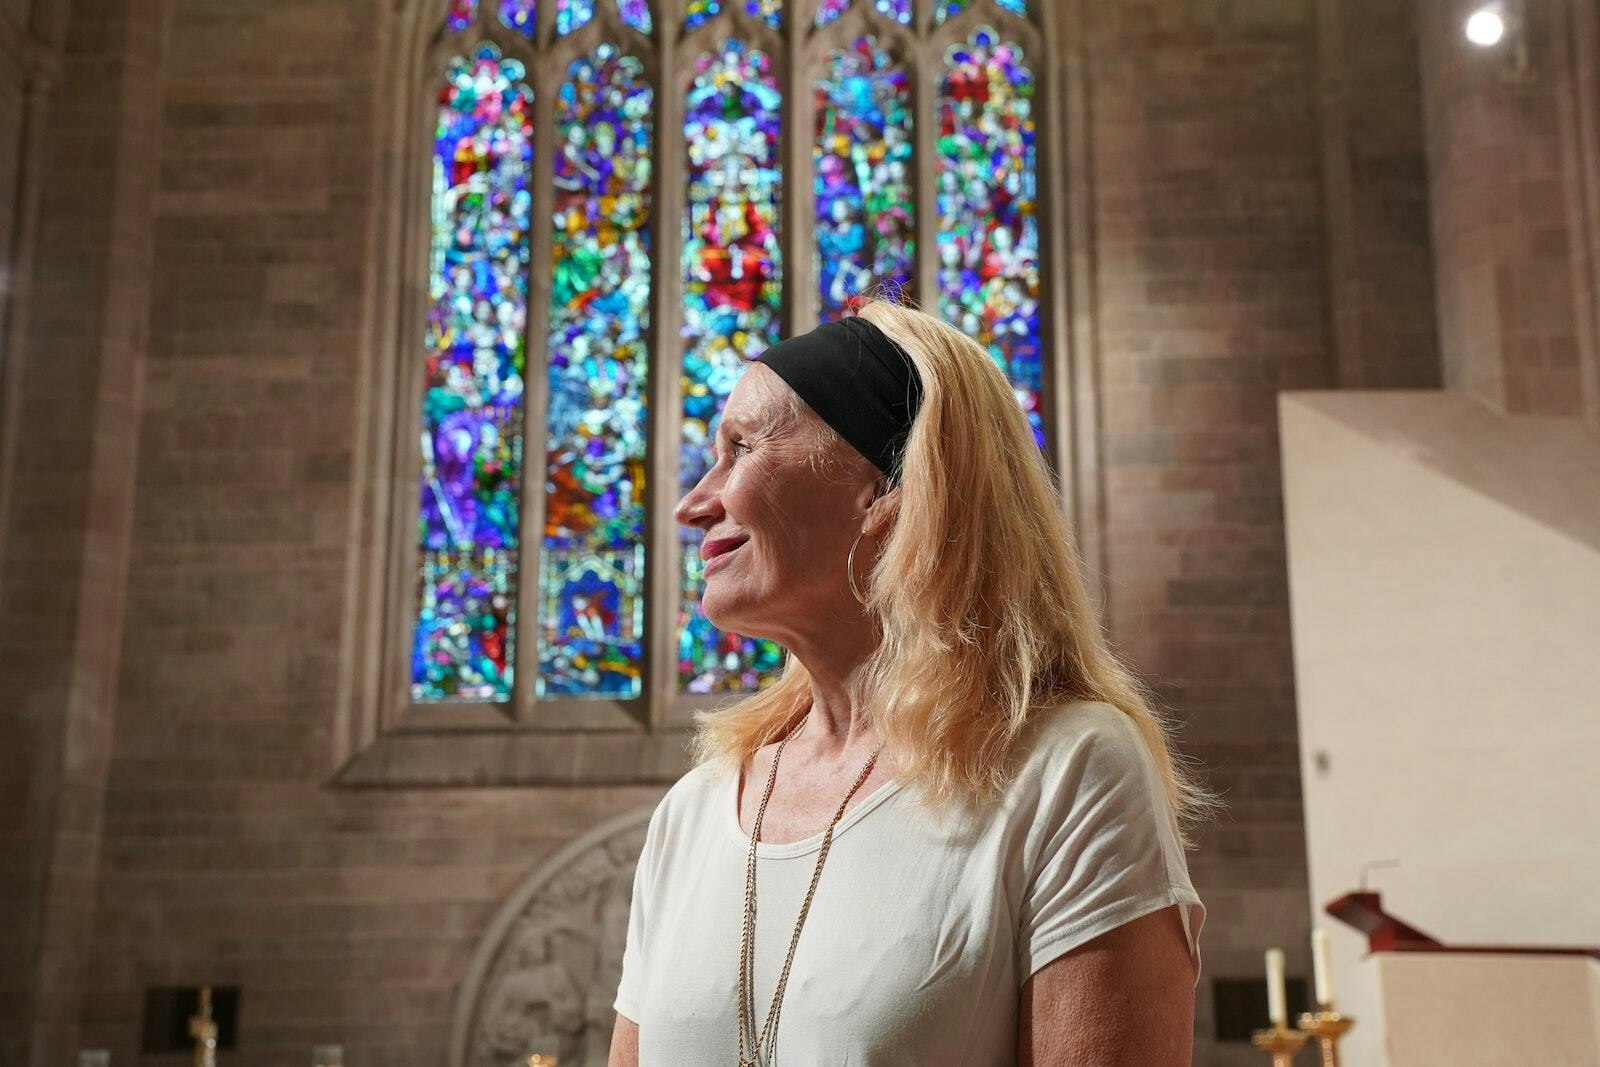 Fuller va a la Catedral Blessed Sacrament cada vez que regresa a Michigan para visitar a la familia. Las dos enfermeras que la encontraron, decidieron llamarla Mary Church, en lugar de Jane Doe, que se emplea cuando el nombre real de una mujer es desconocido.